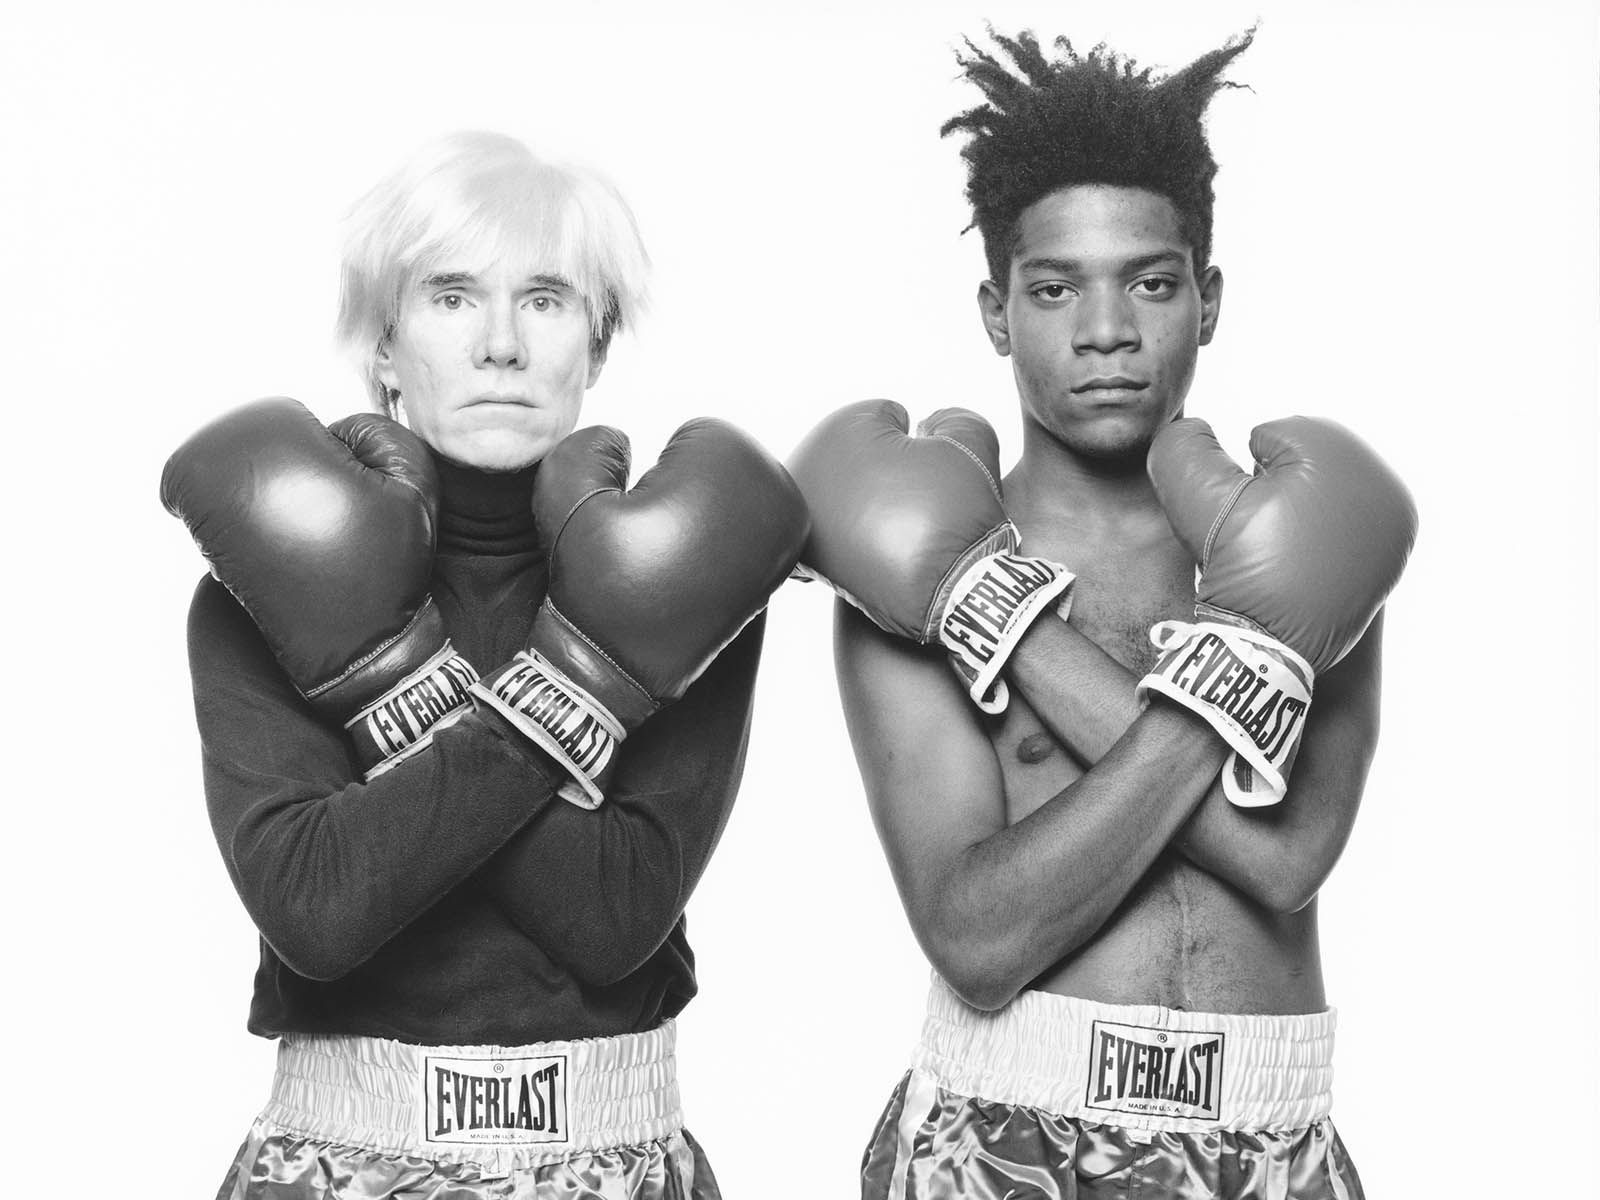 La Fundación Louis Vuitton presenta: “Basquiat x Warhol. Painting 4 hands”